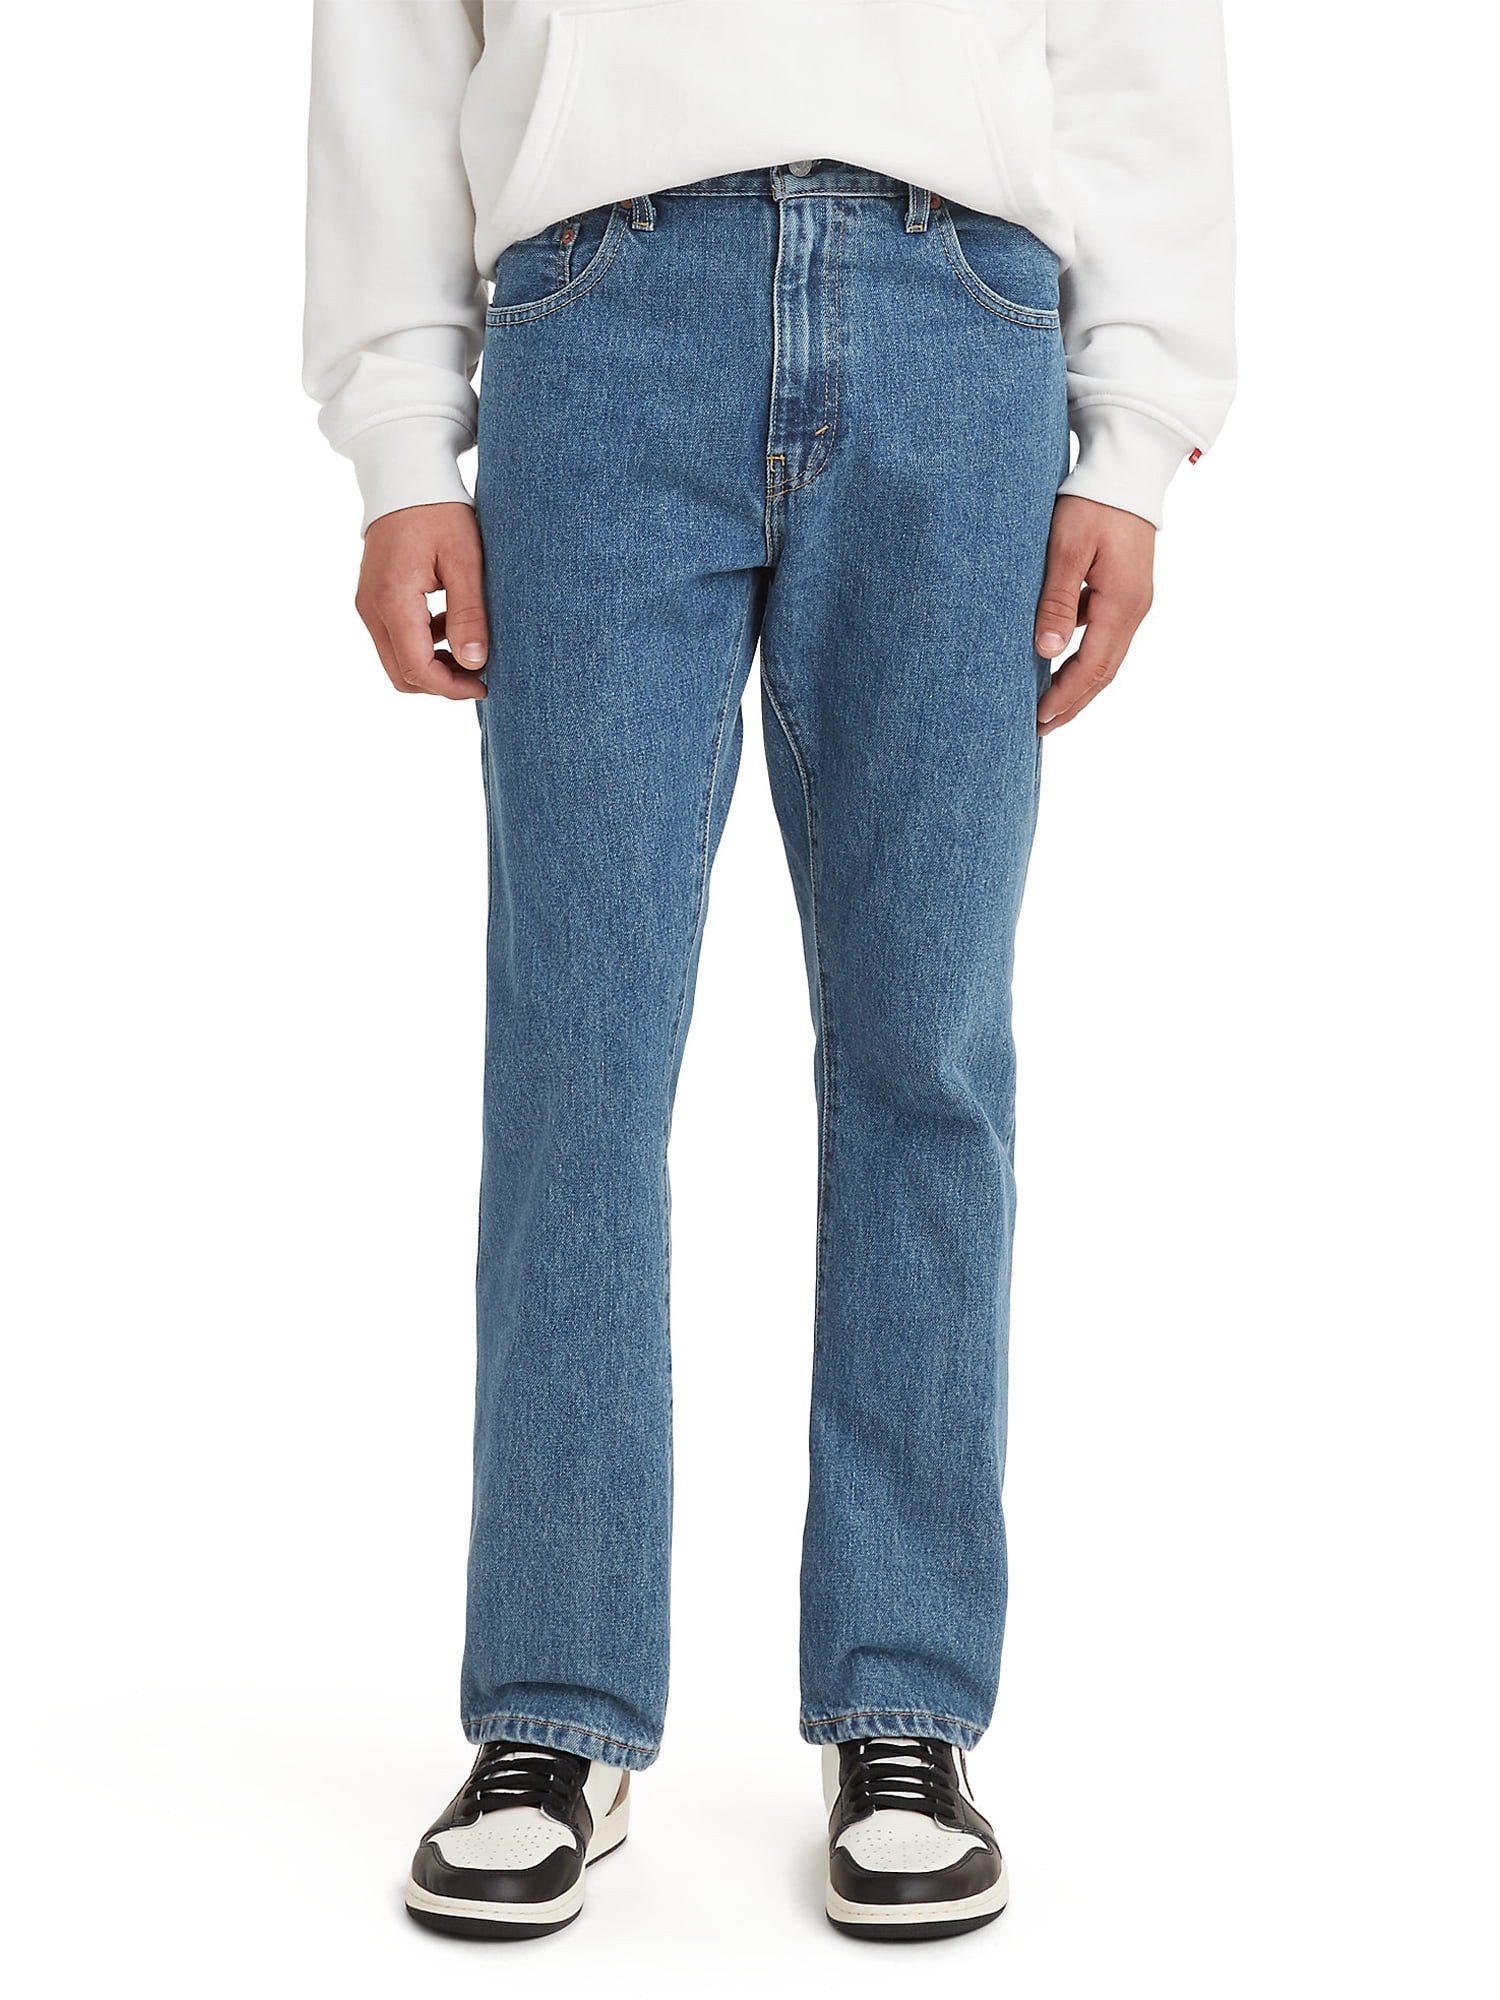 Levi's Men's 517 Bootcut Jeans - Walmart.com